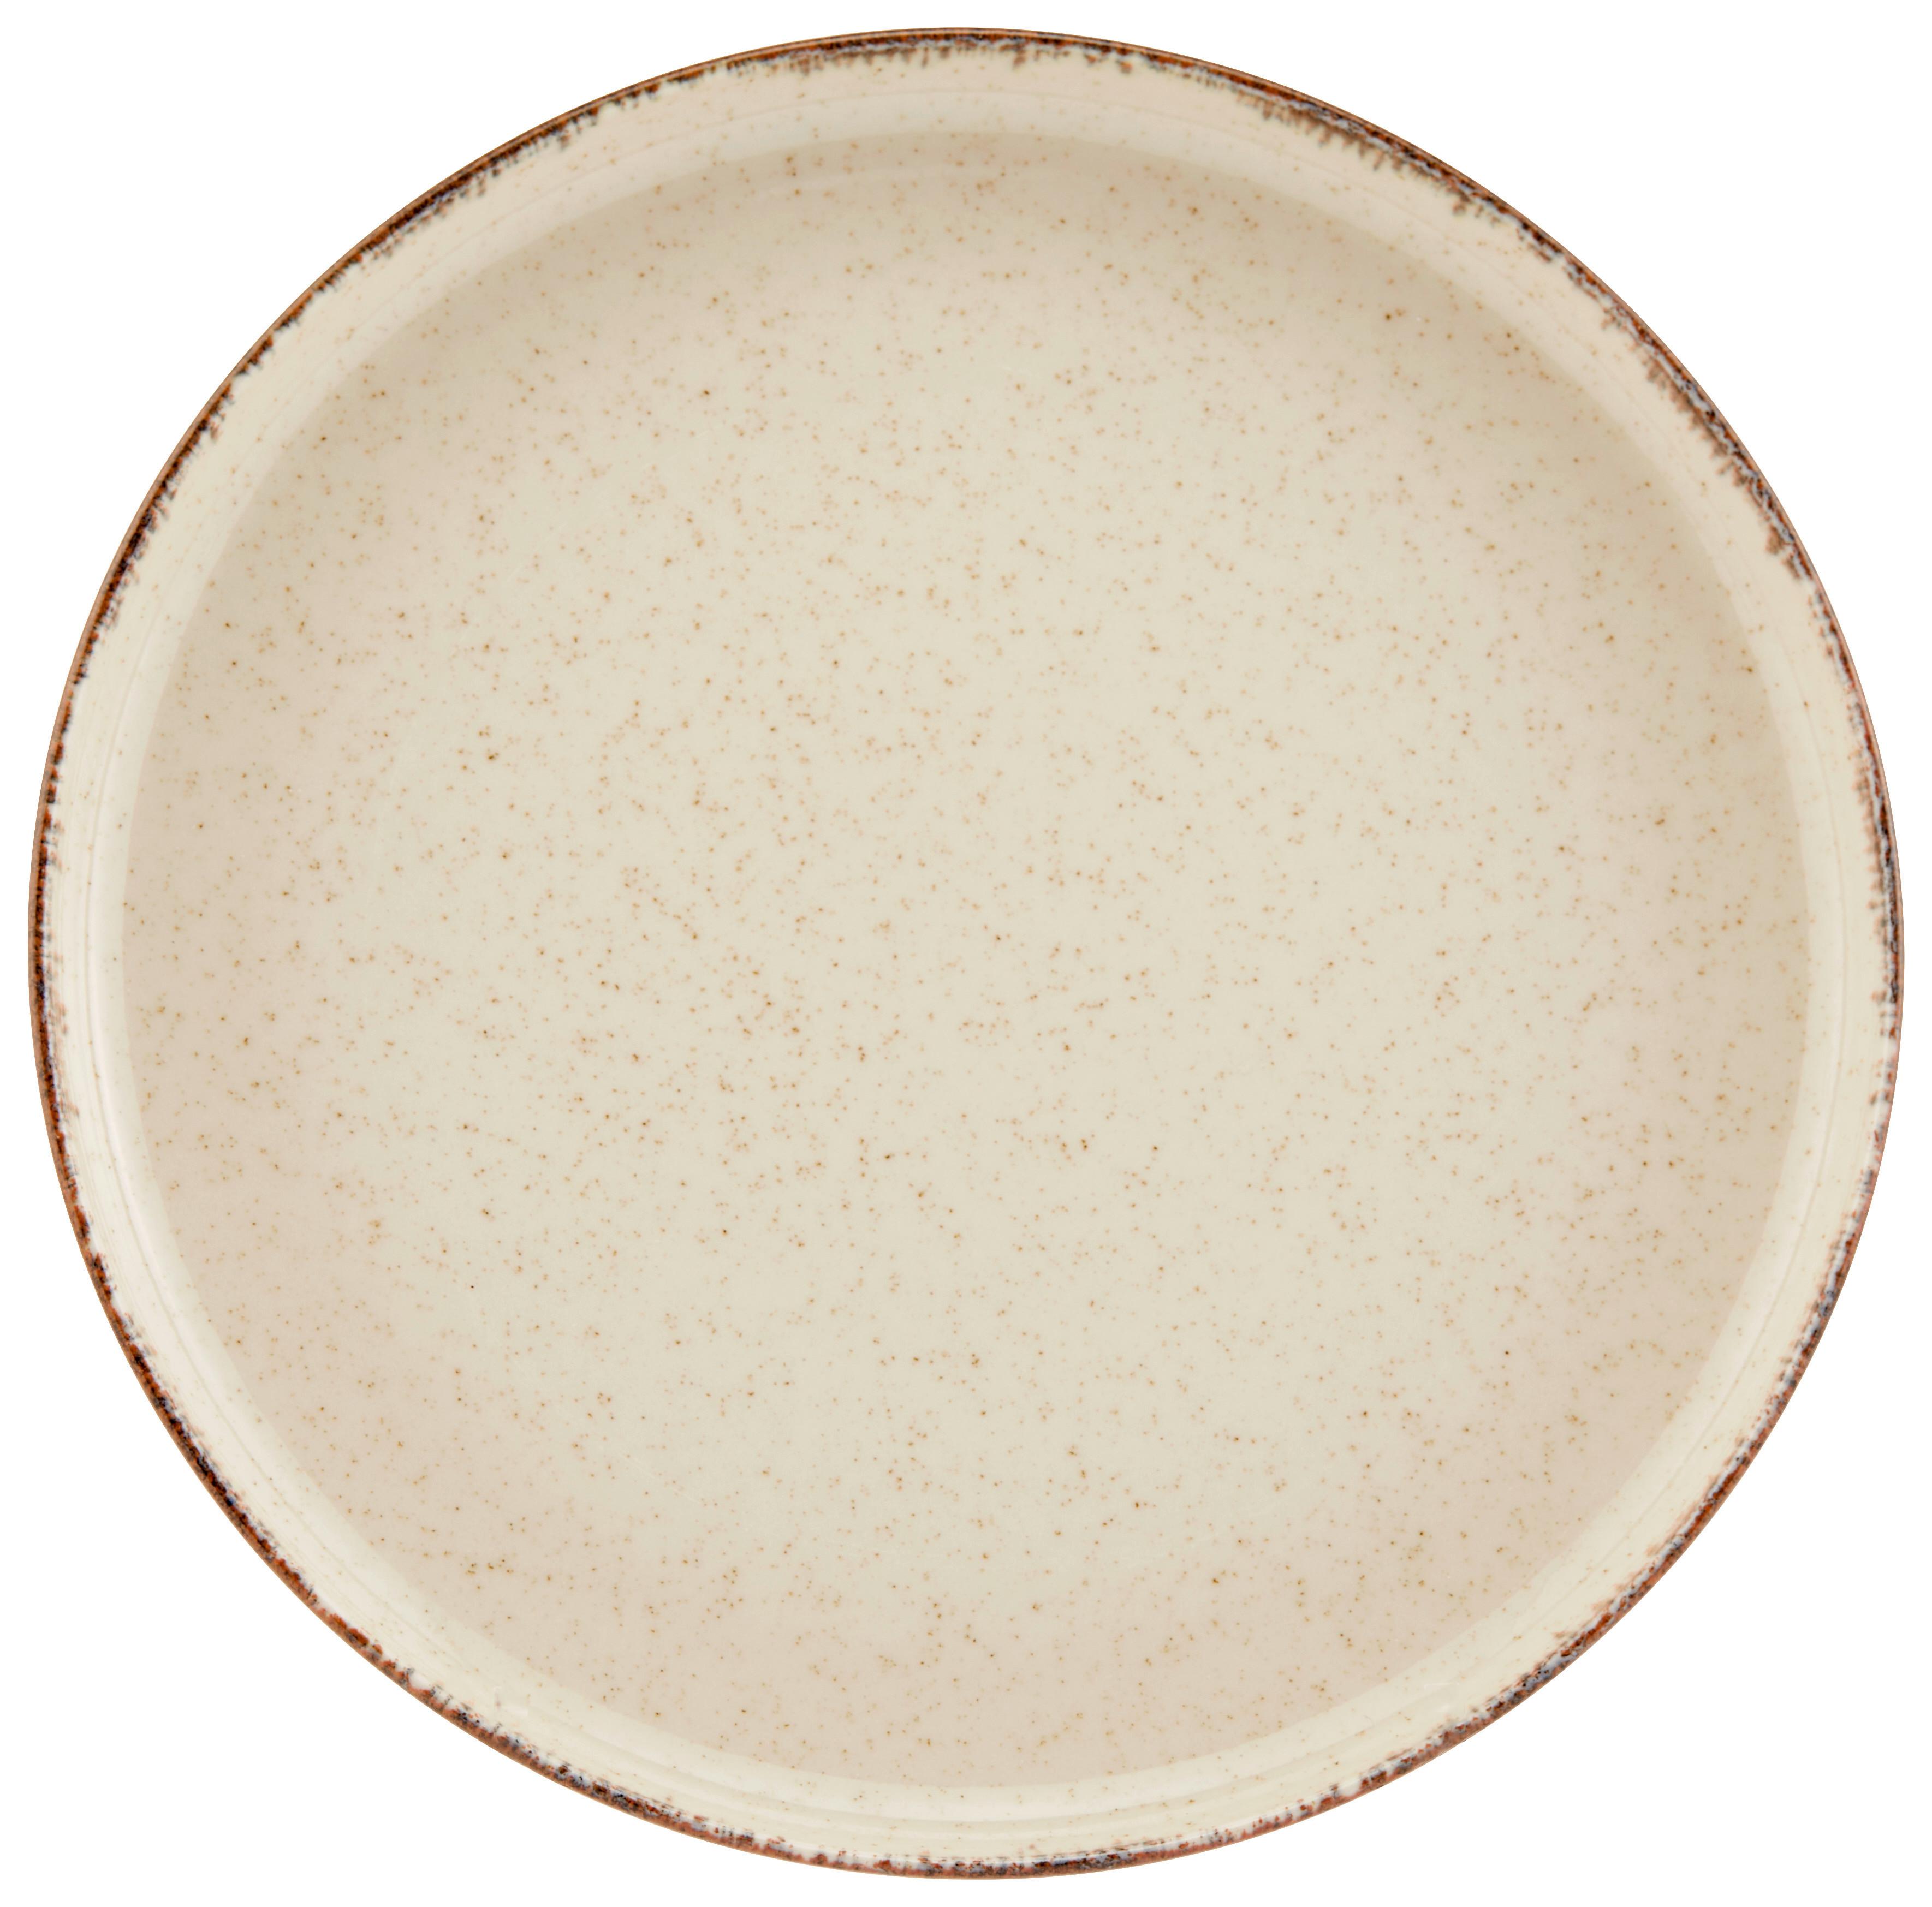 Dessertteller Porzellan Rund, Beige Sonora ca. 19 cm - Beige, MODERN, Keramik (19cm) - James Wood